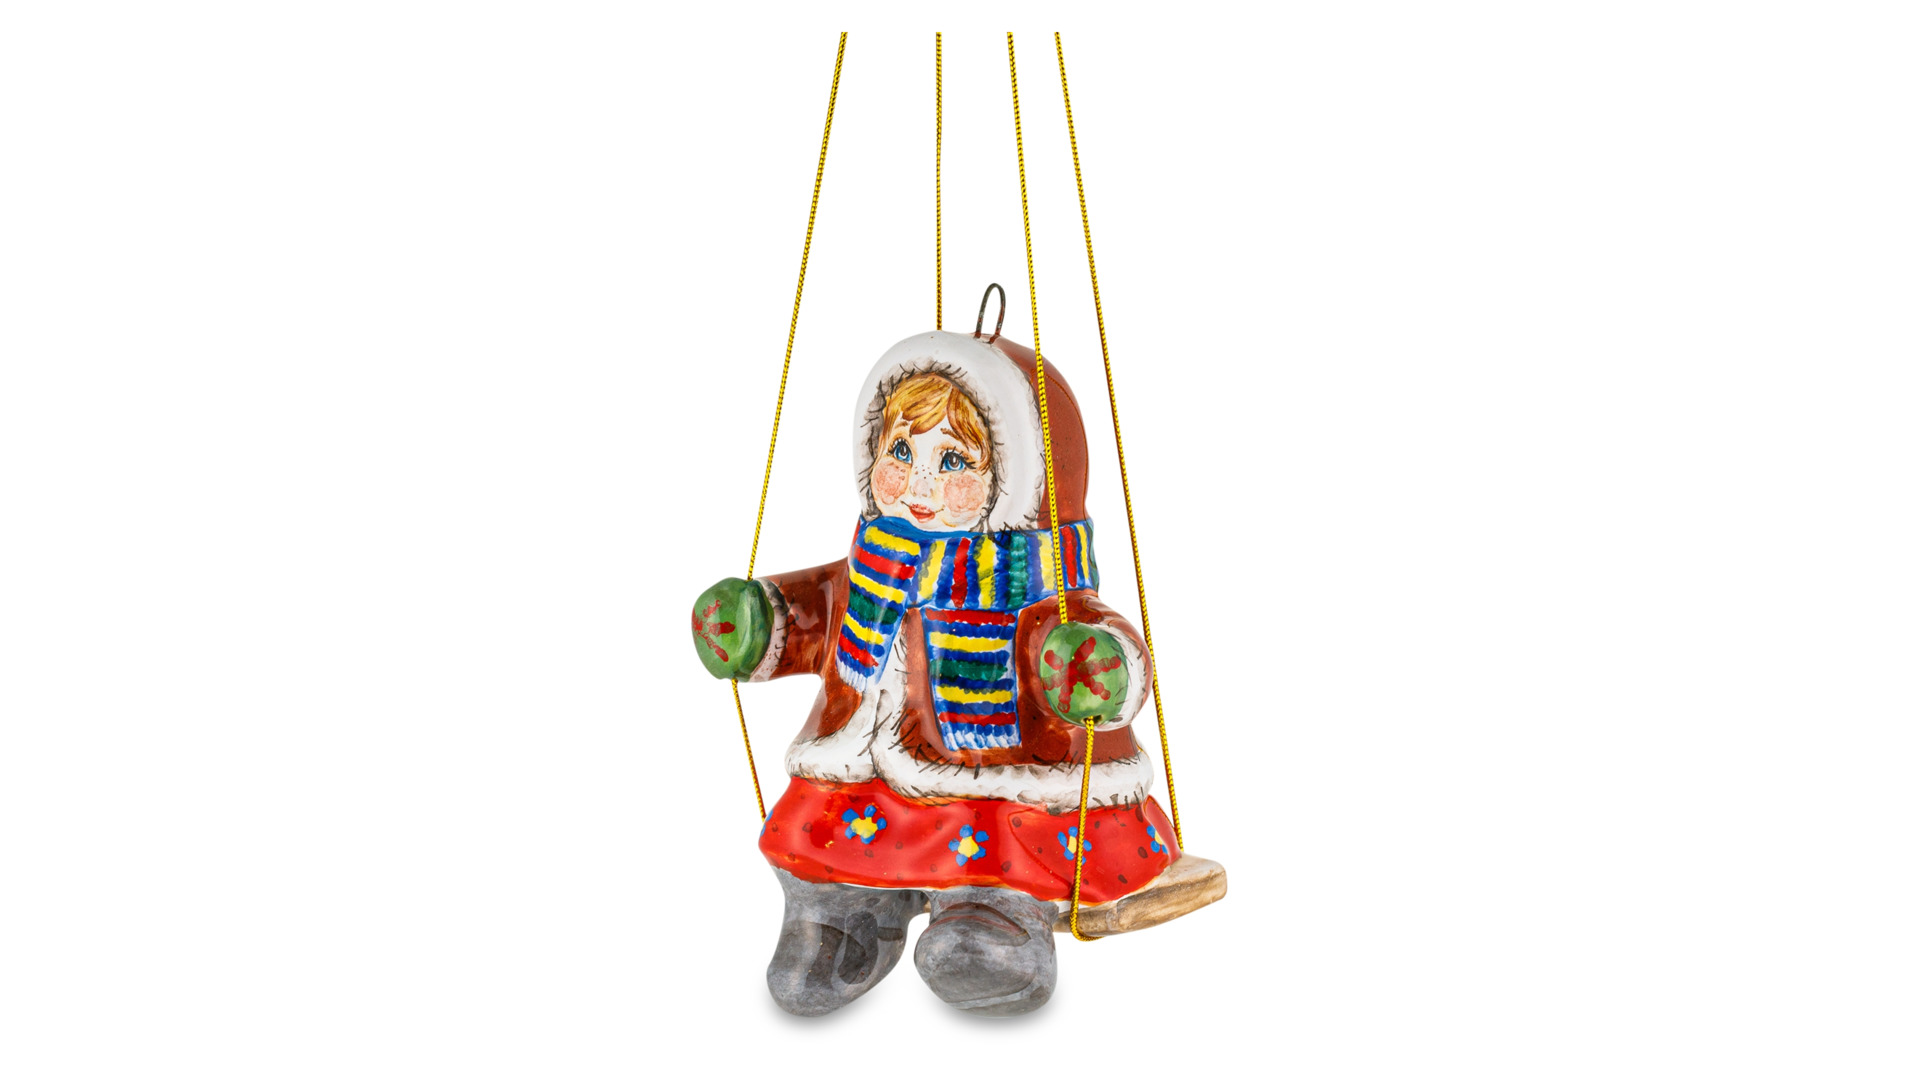 Игрушка елочная Ярославская майолика Девочка на качели 9 см, керамика